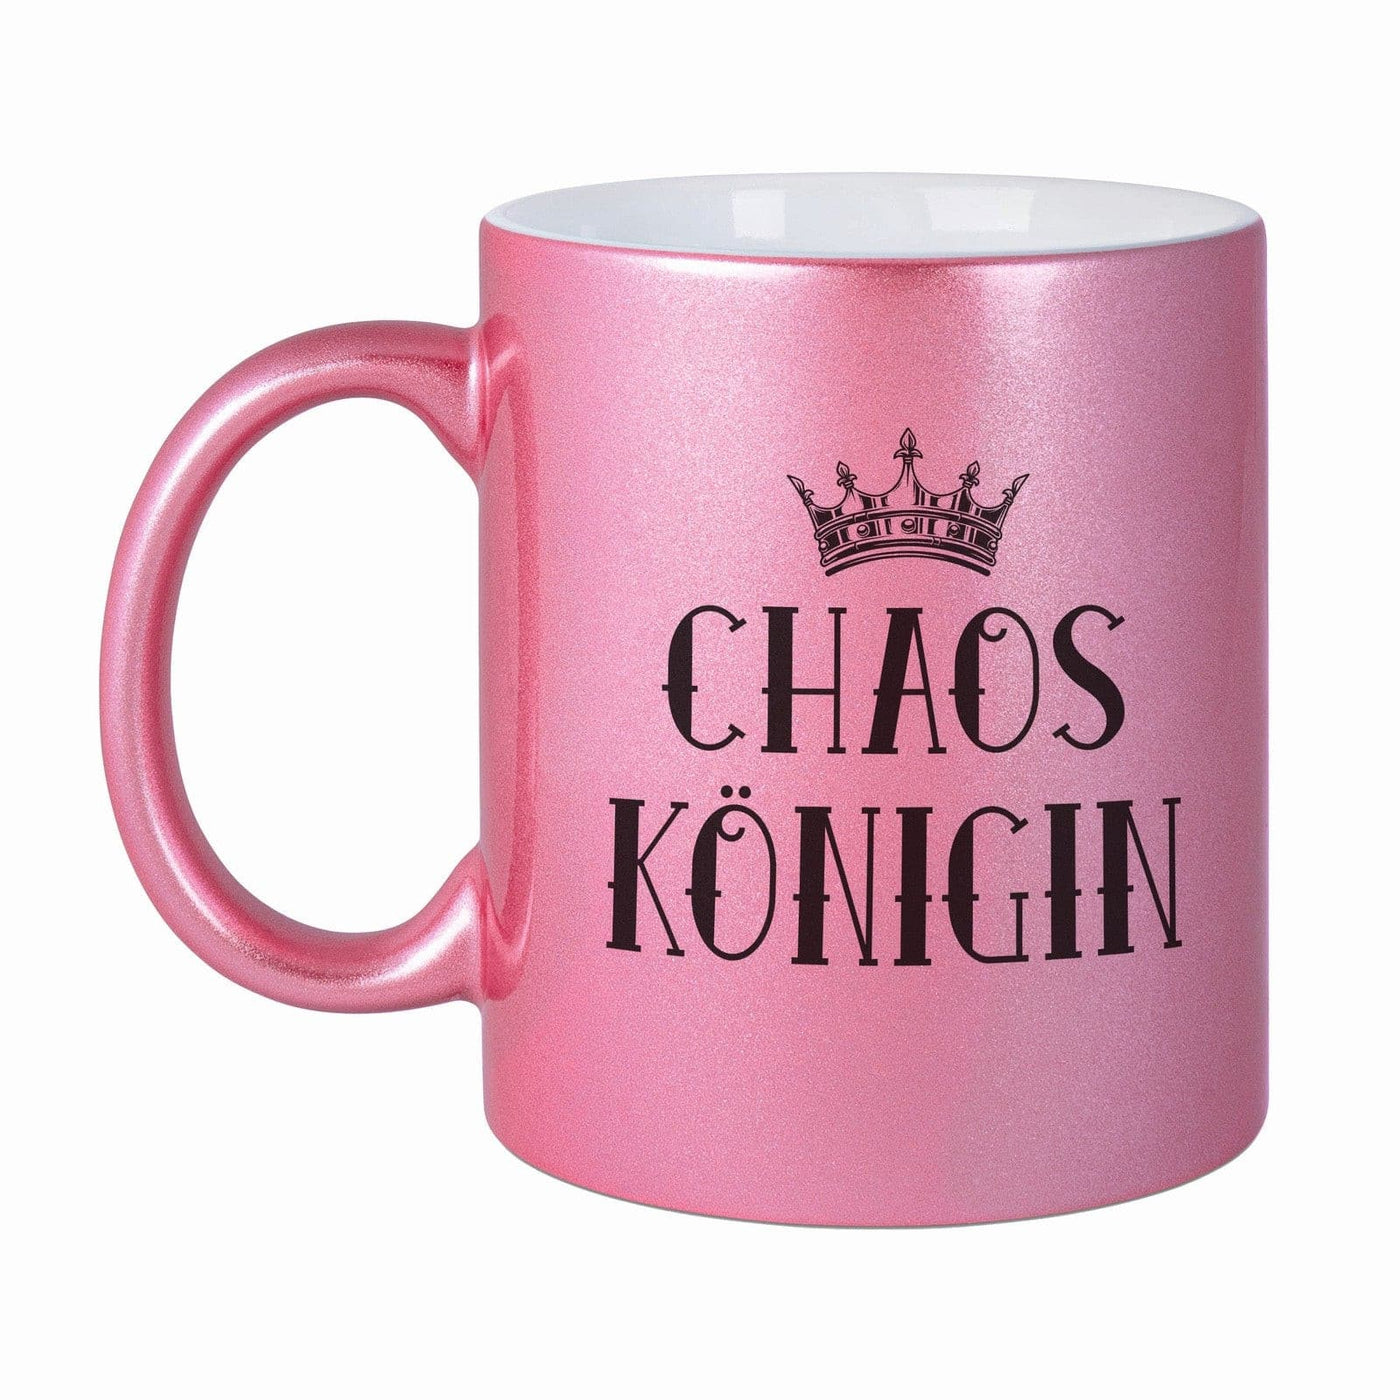 Bild: Tasse - Chaos Königin - Metallictasse Geschenkidee